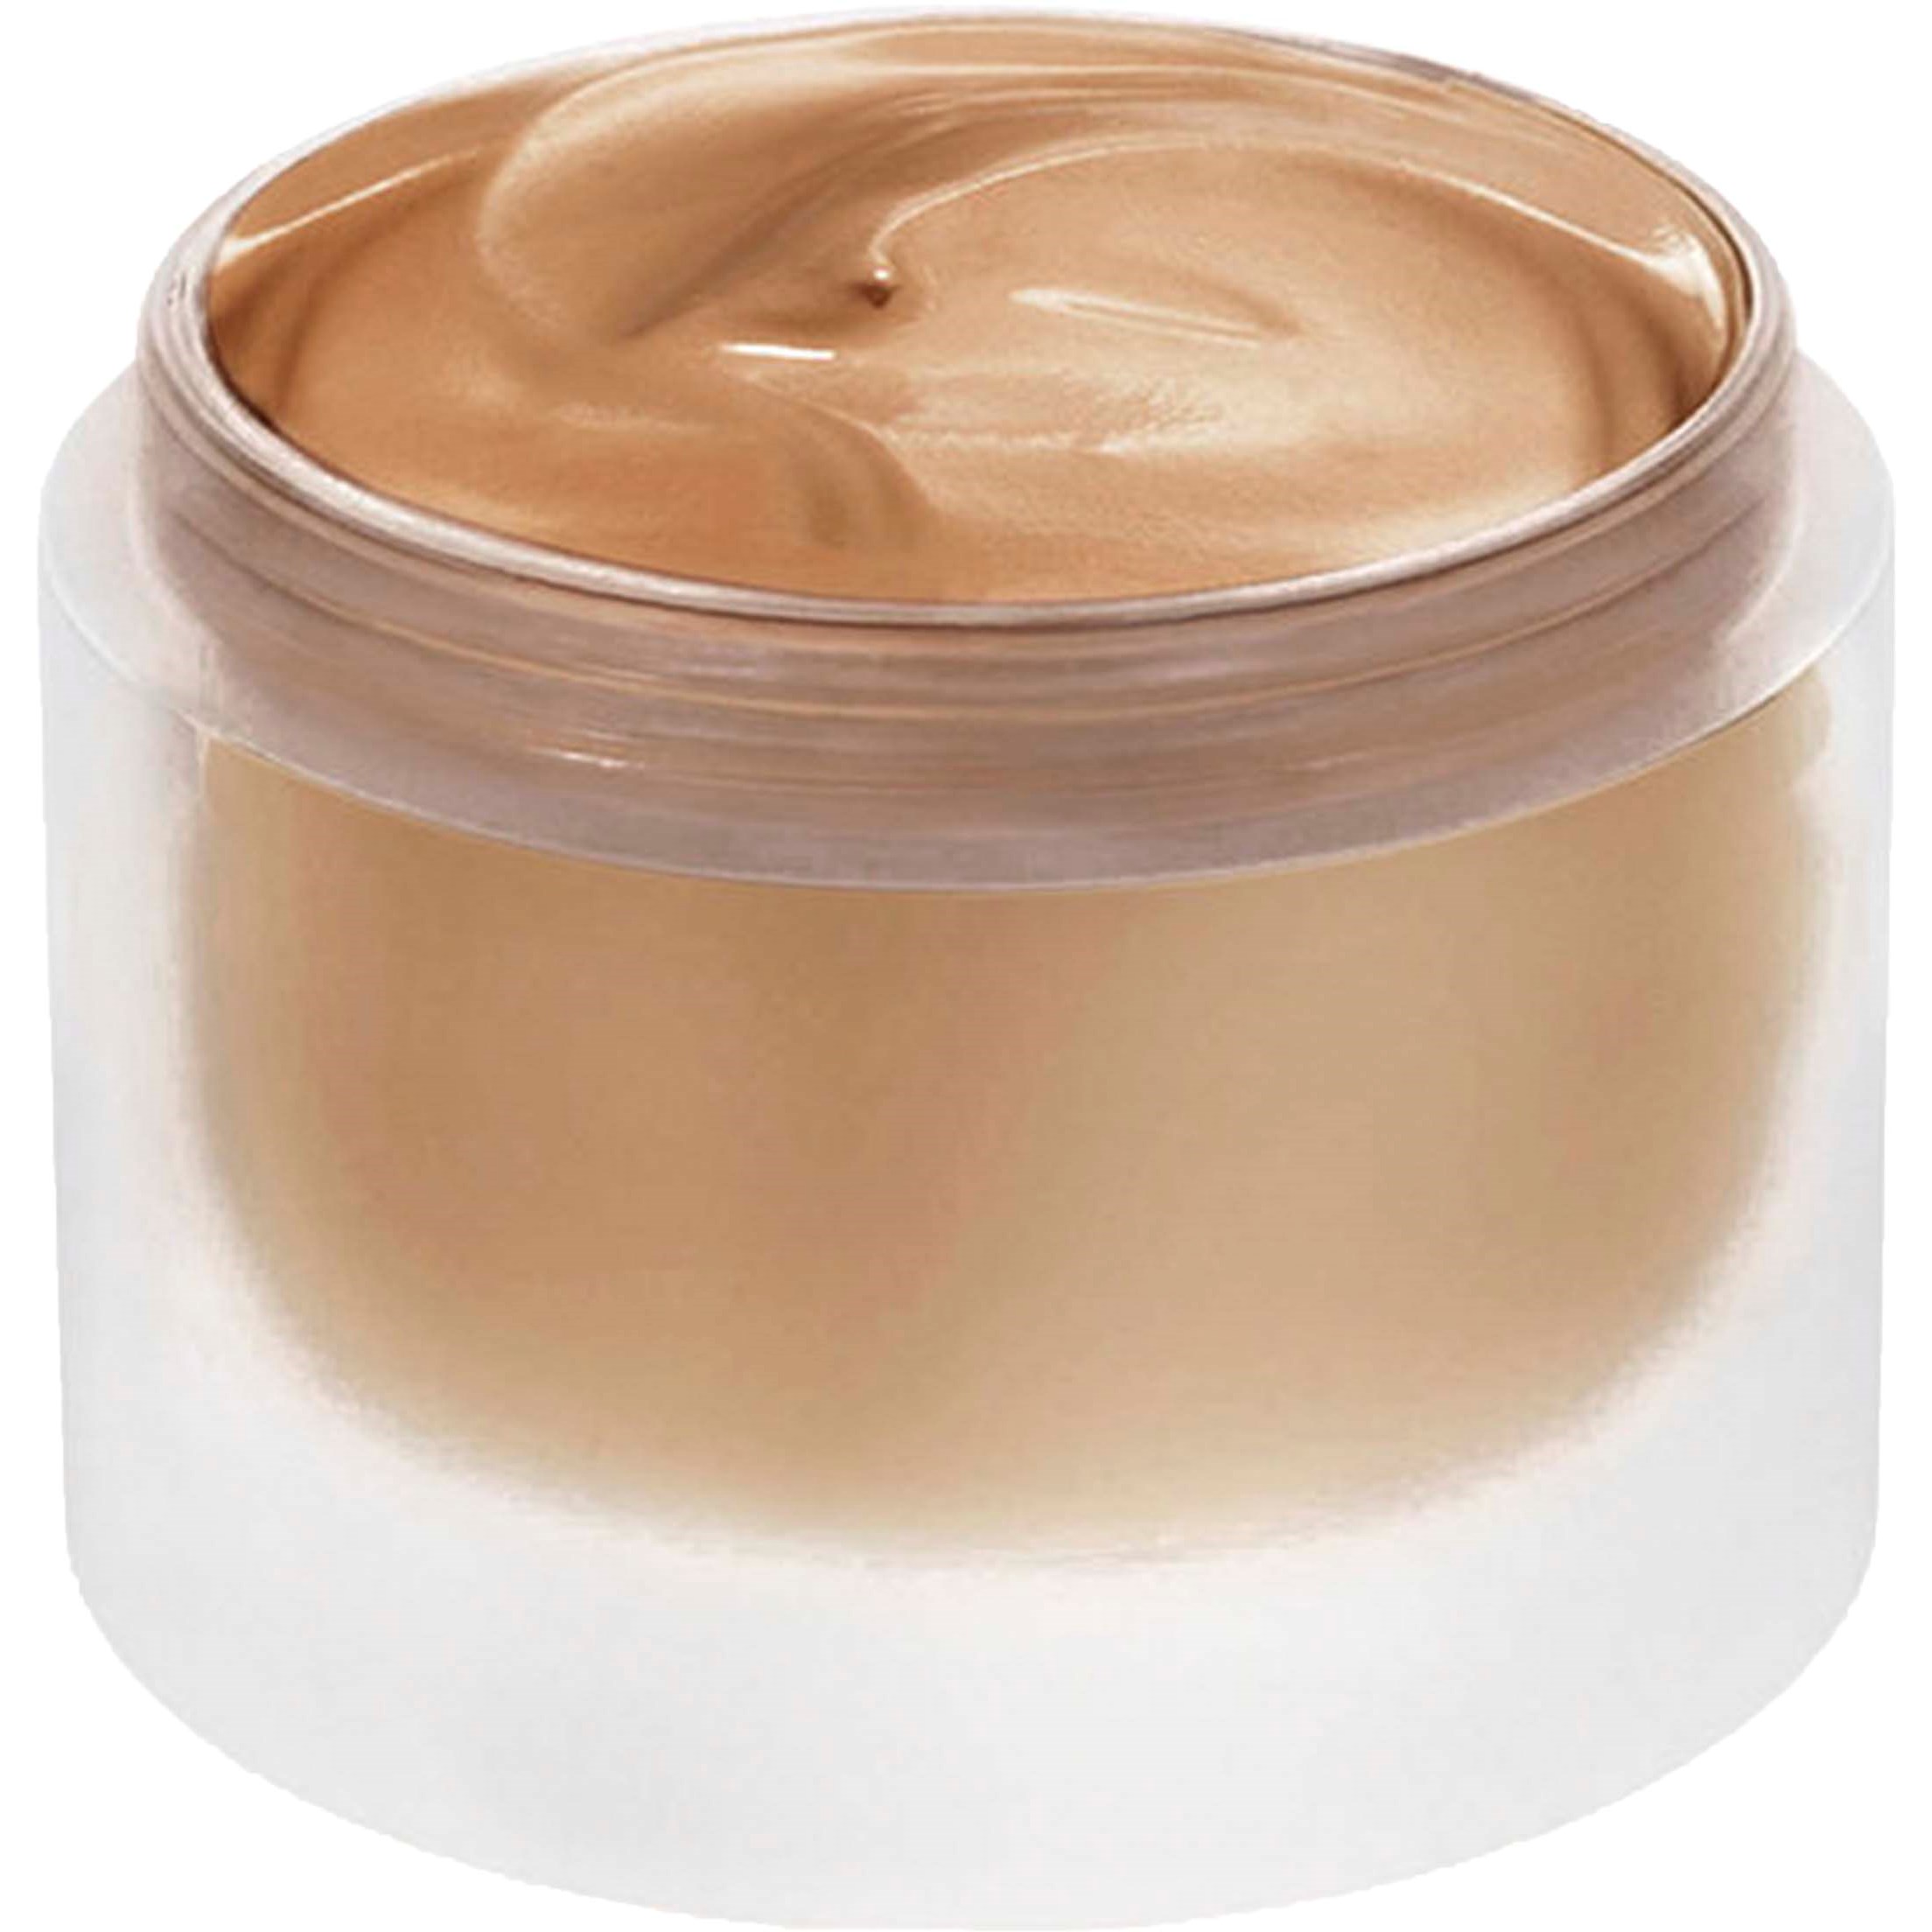 Elizabeth Arden Lift&Firm Makeup 22 Toasty beige